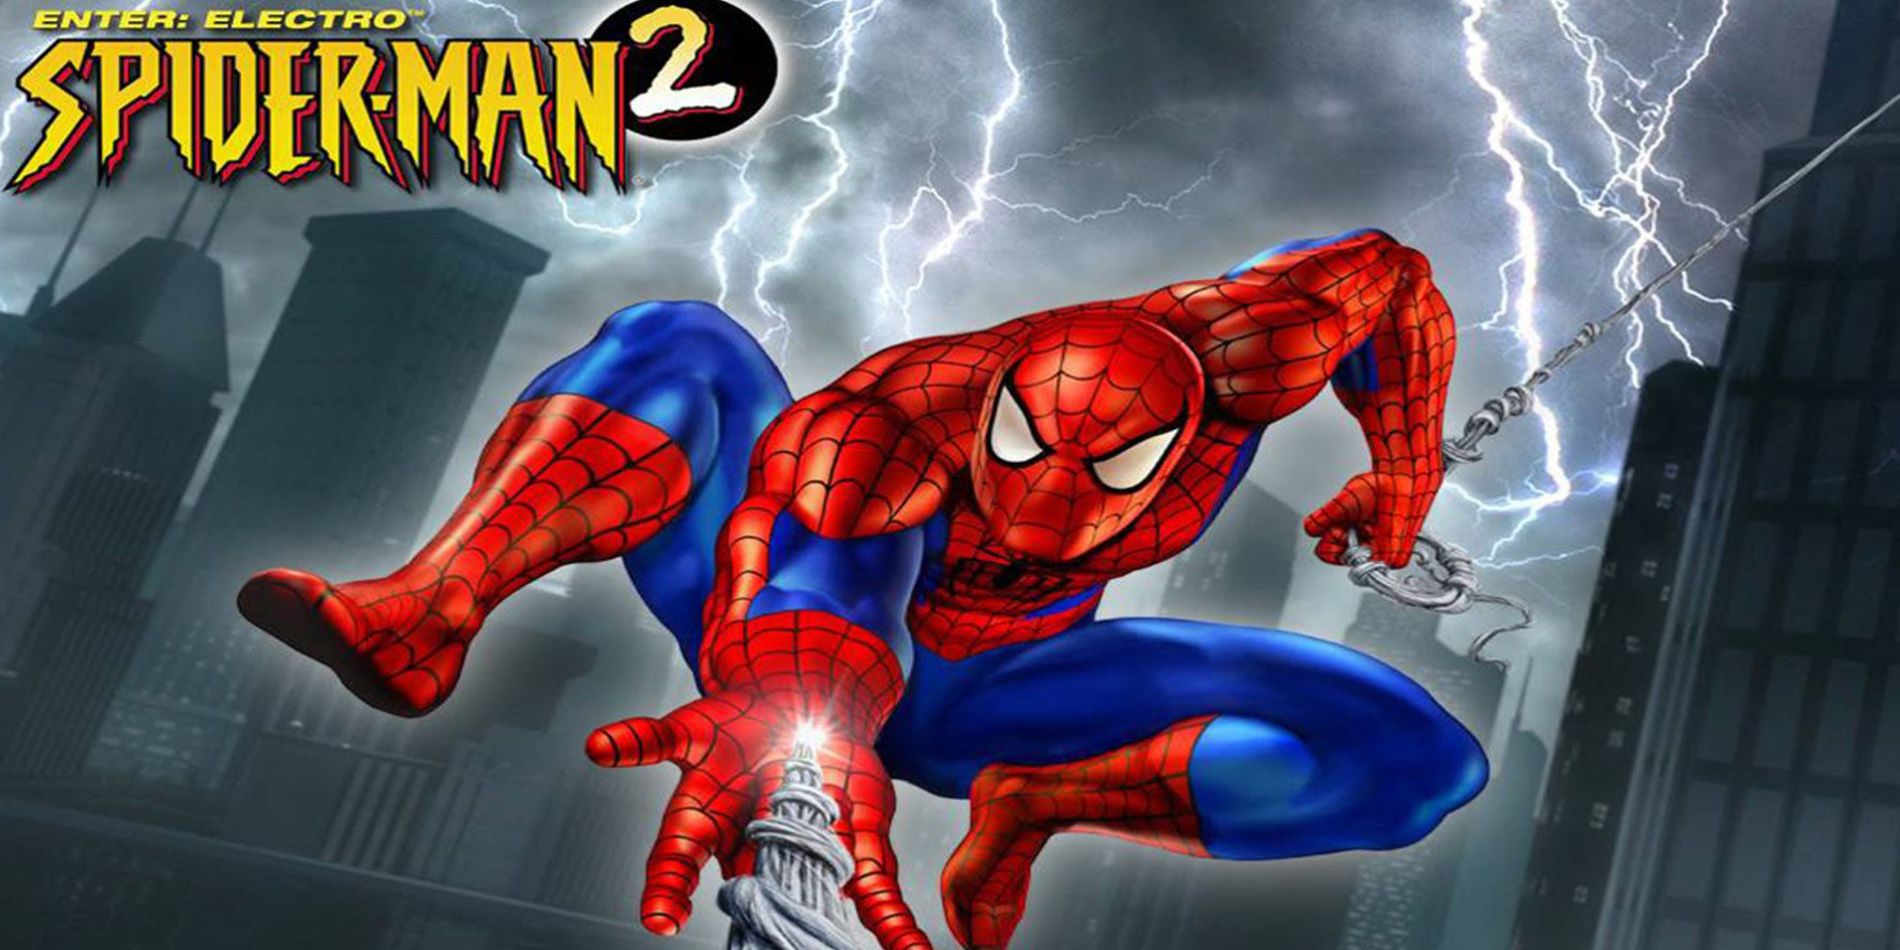 Spider-Man Enter Electro box art